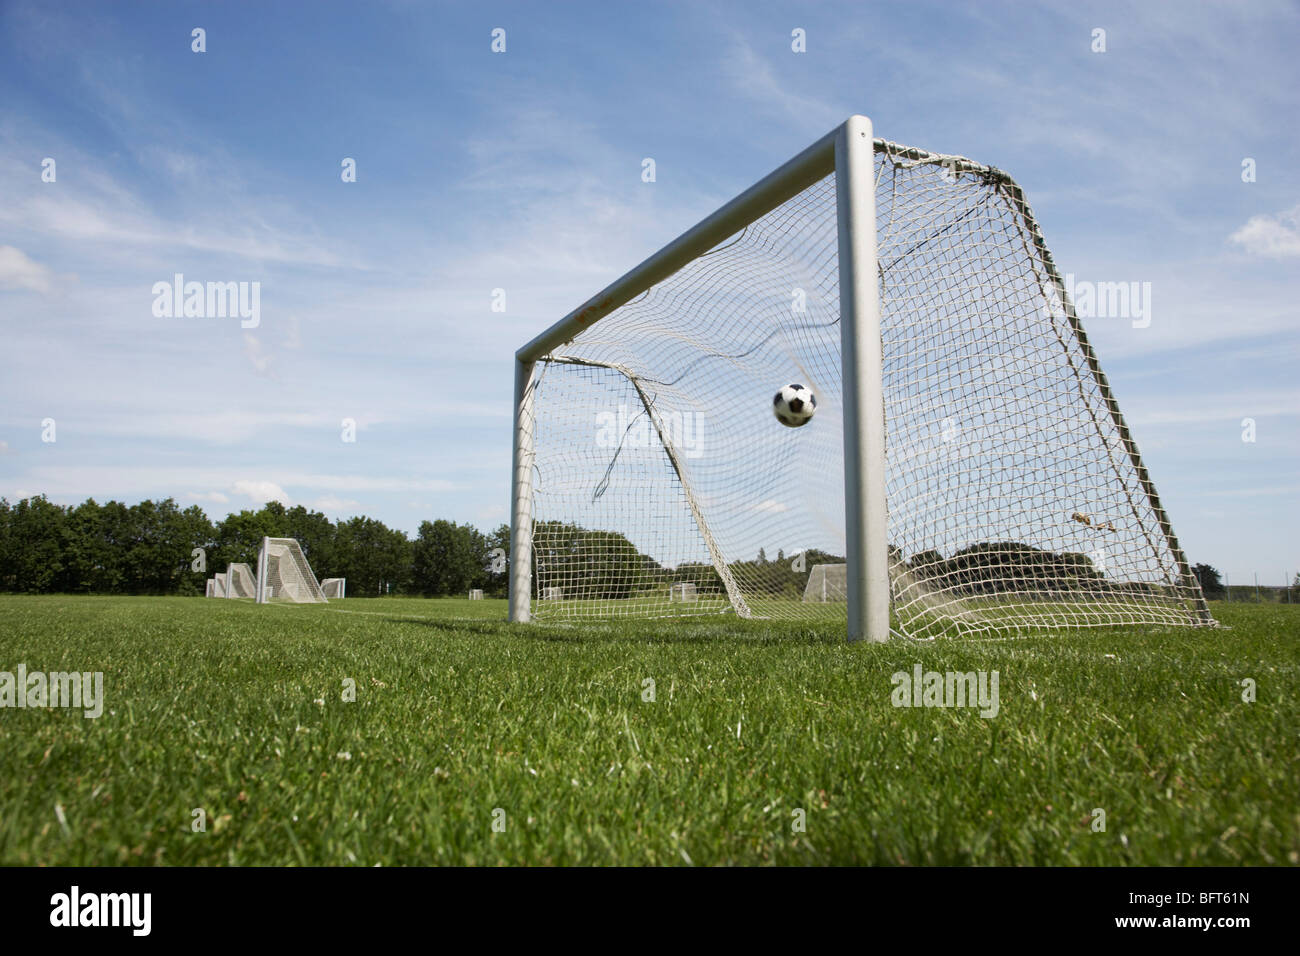 Fußball und Net Stockfoto